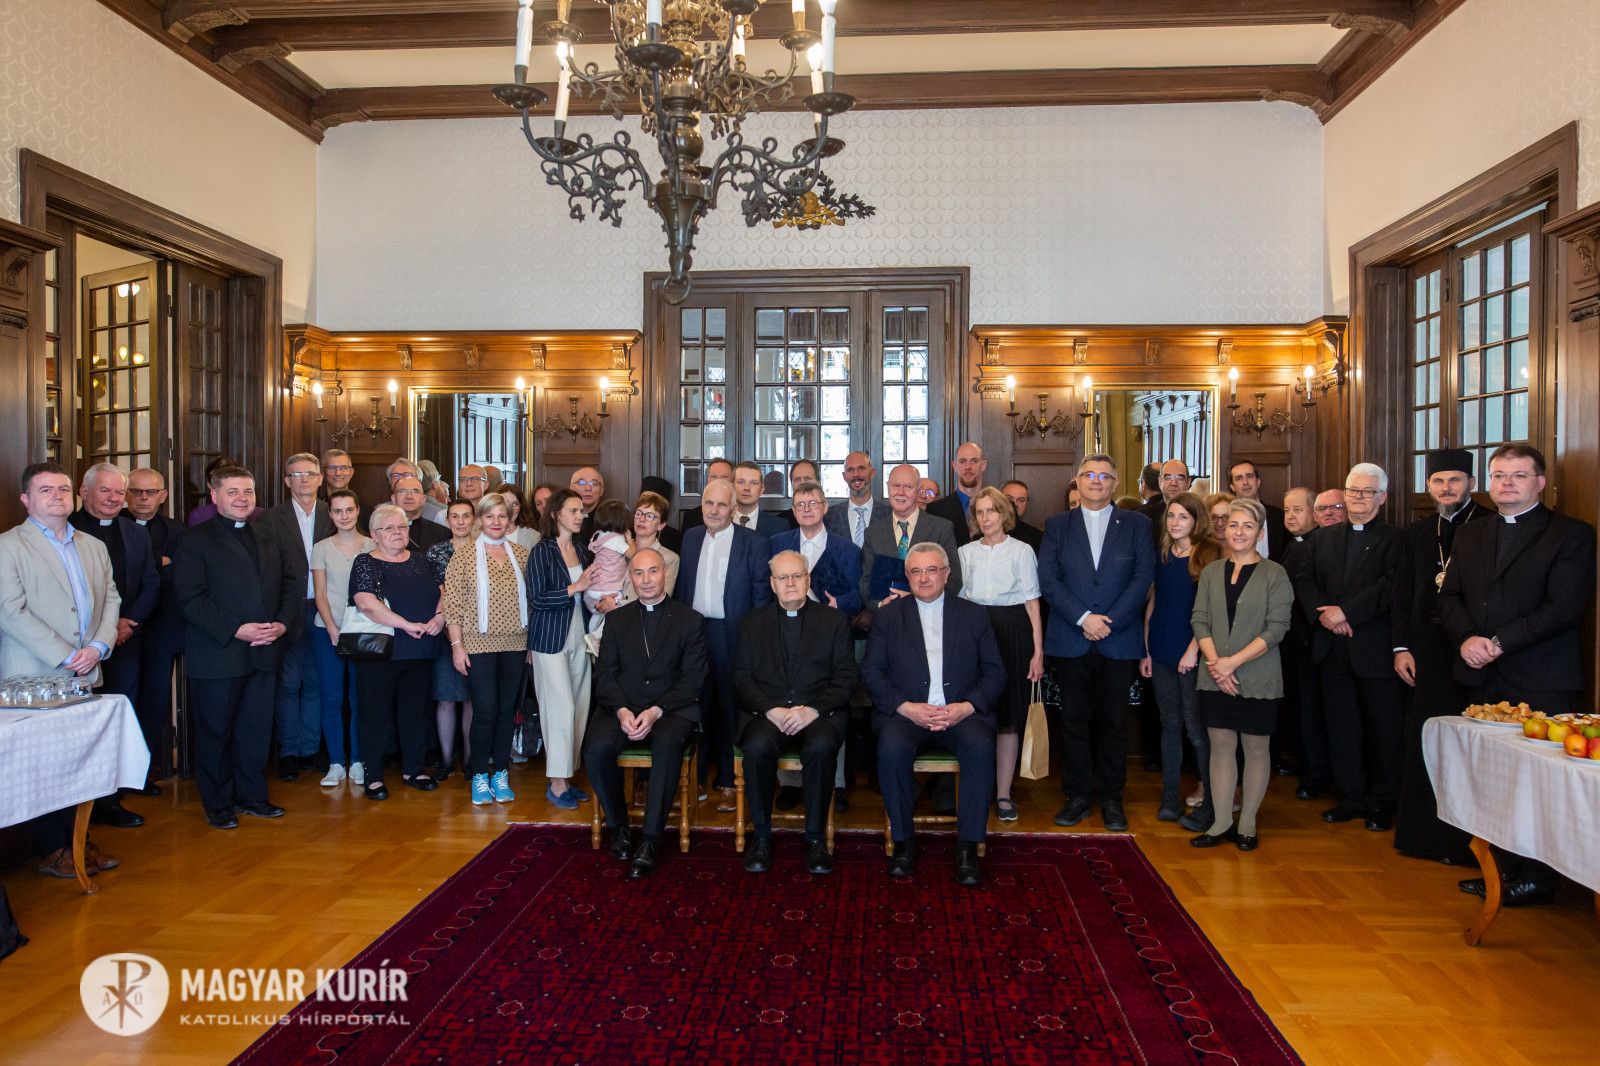 Az MKPK Pro Ecclesia Hungariae díj II. fokozatát adományozta a Magyar Kurír három újságírójának, Bodnár Dánielnek, Bókay Lászlónak és Mészáros Ákosnak